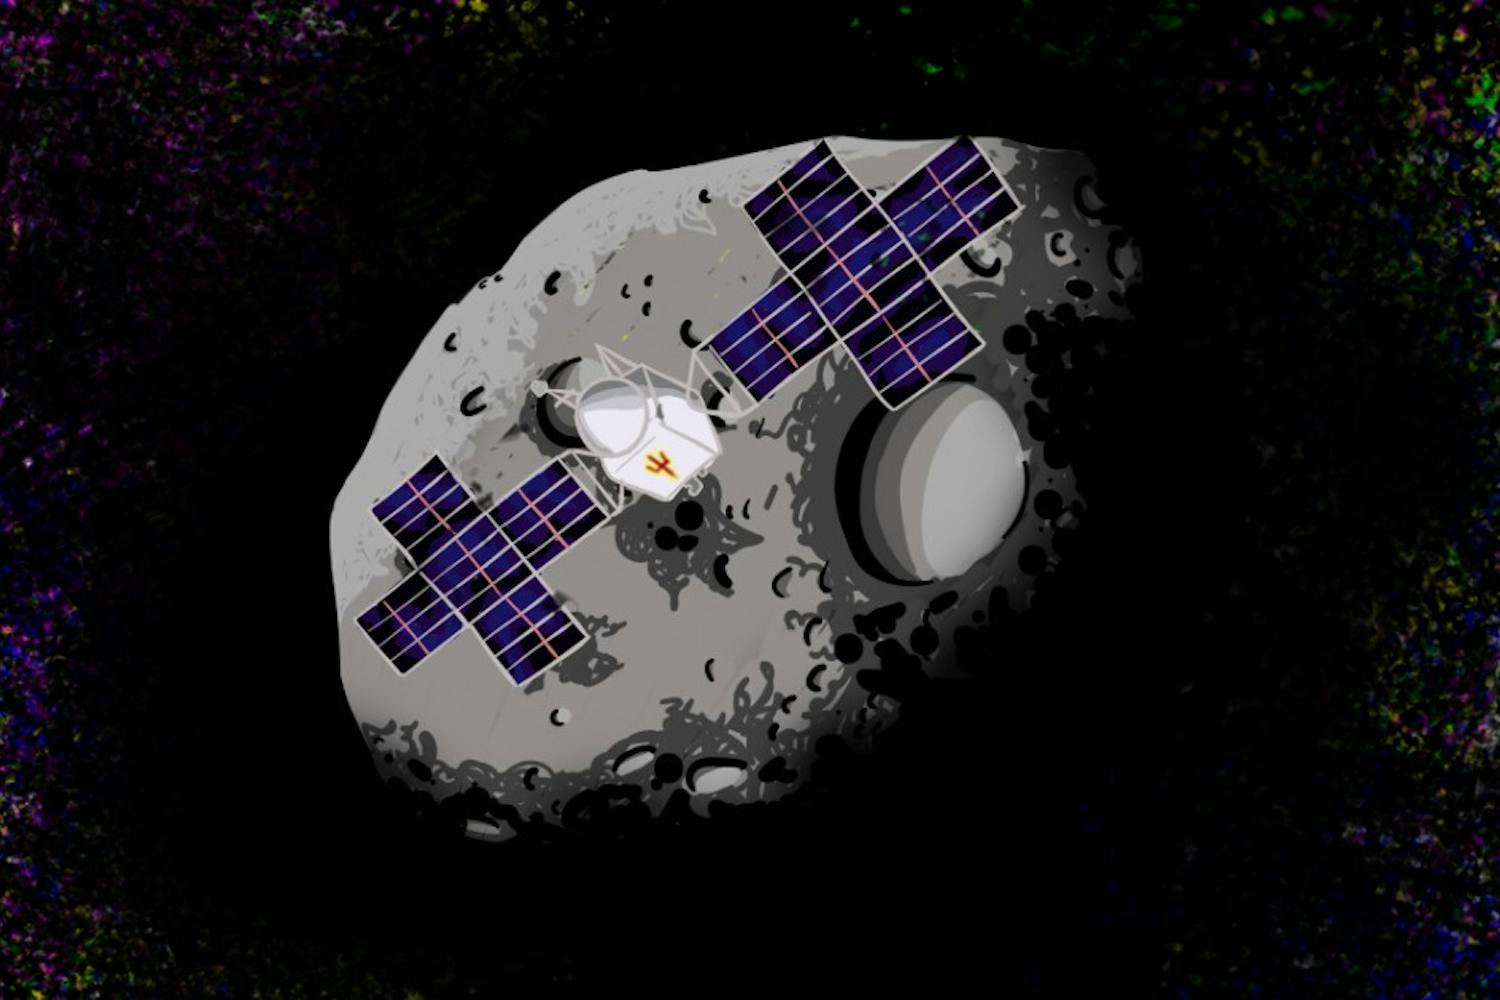 asteroidMission.jpg